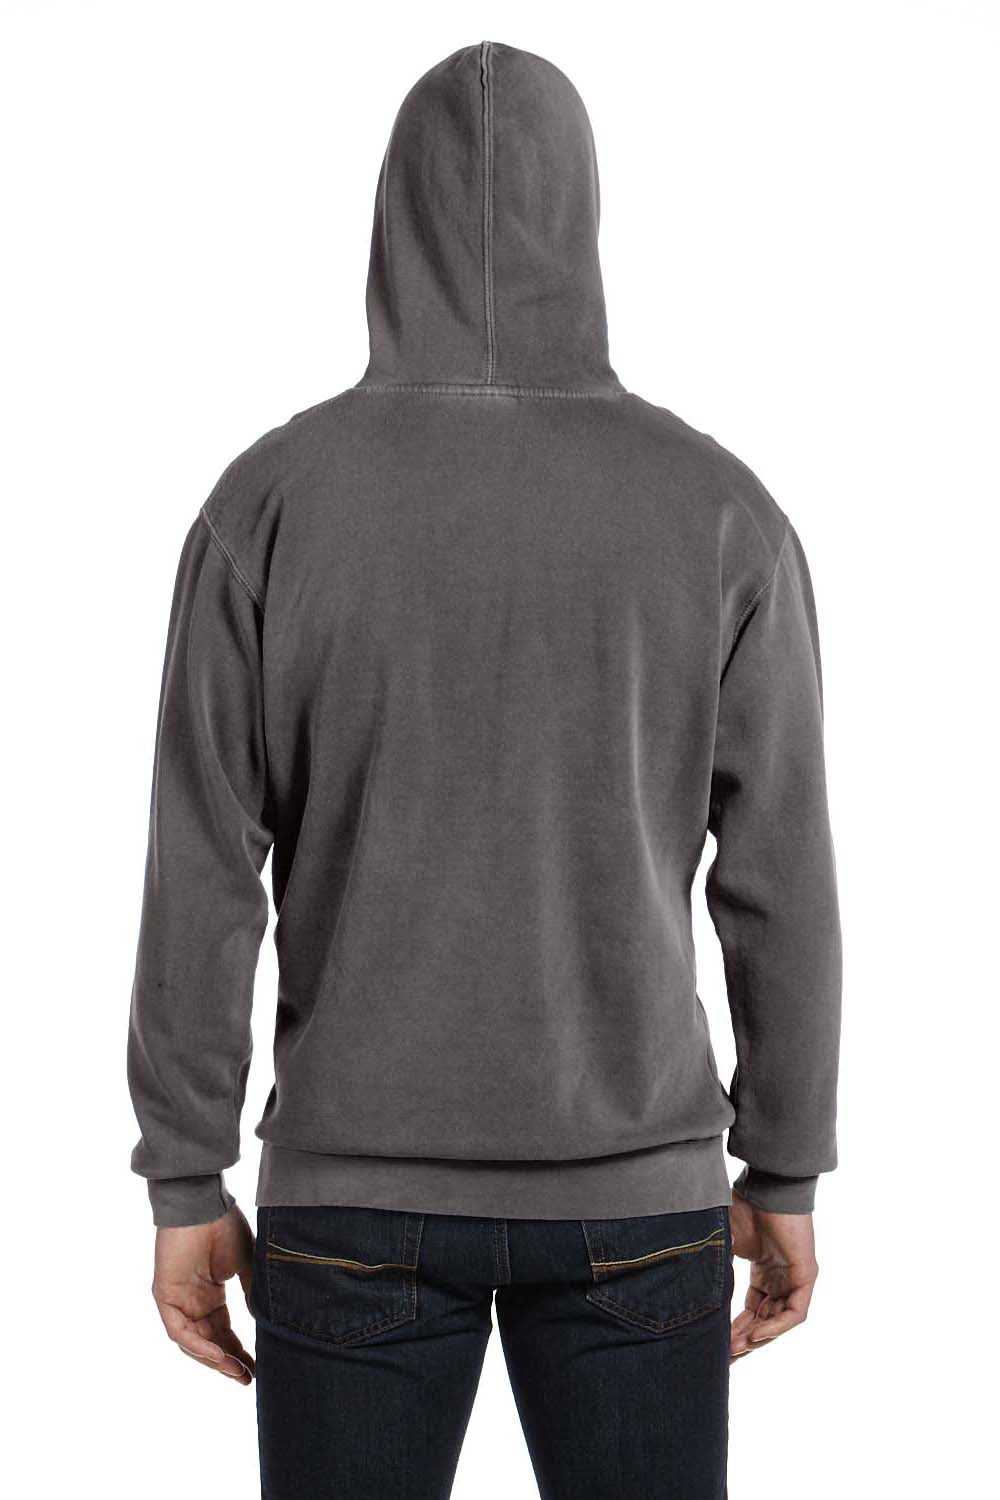 Comfort Colors 1567 Mens Pepper Grey Hooded Sweatshirt Hoodie —